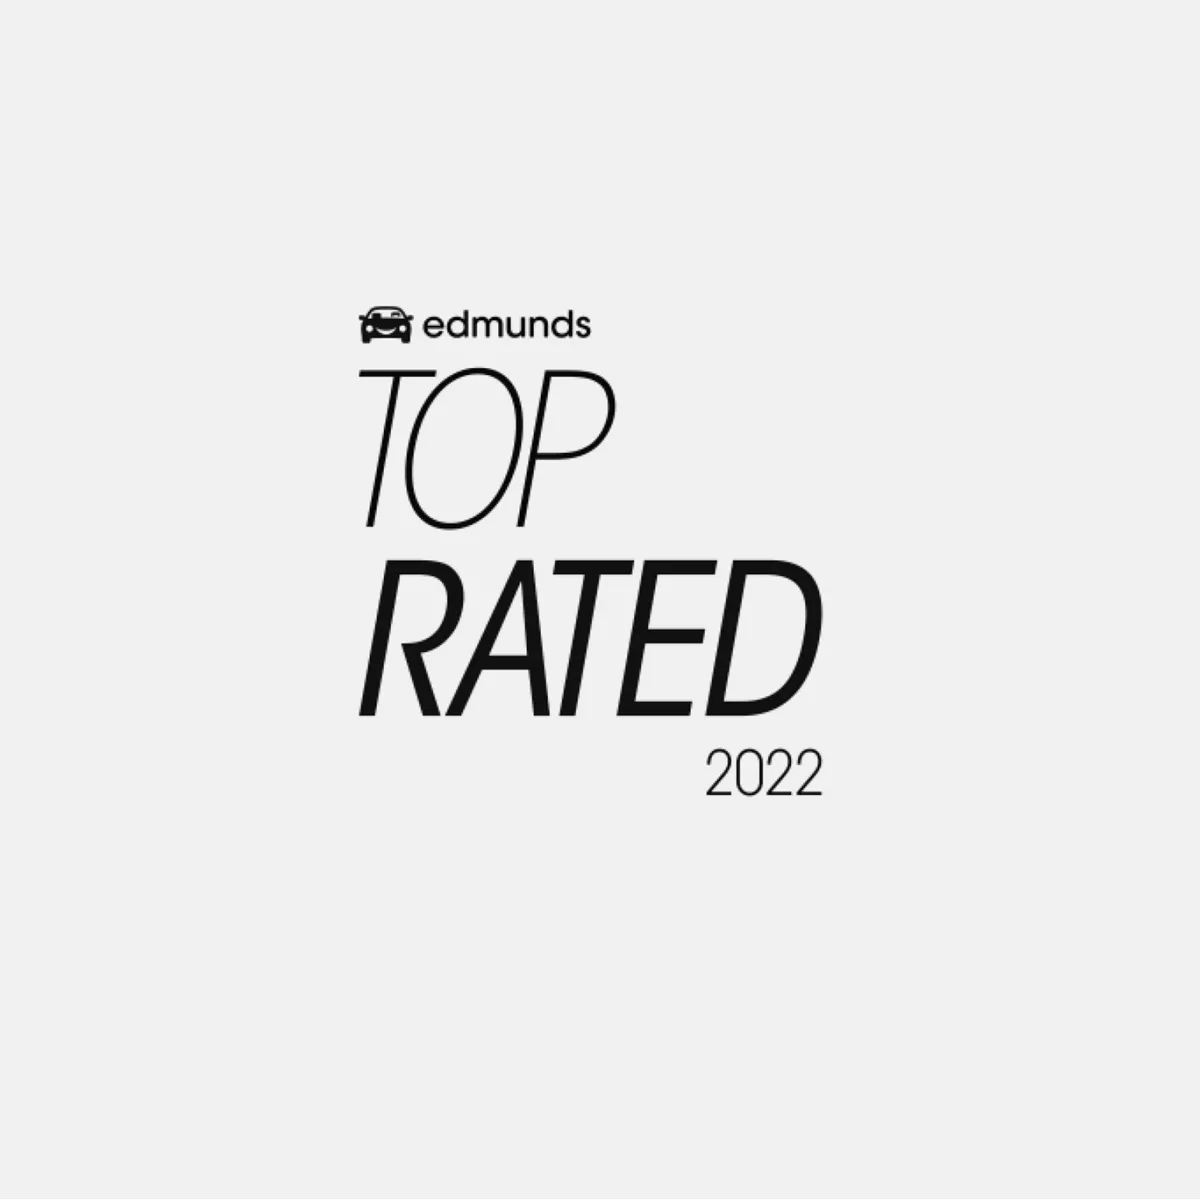 Edmunds 最高評價 2022 年。